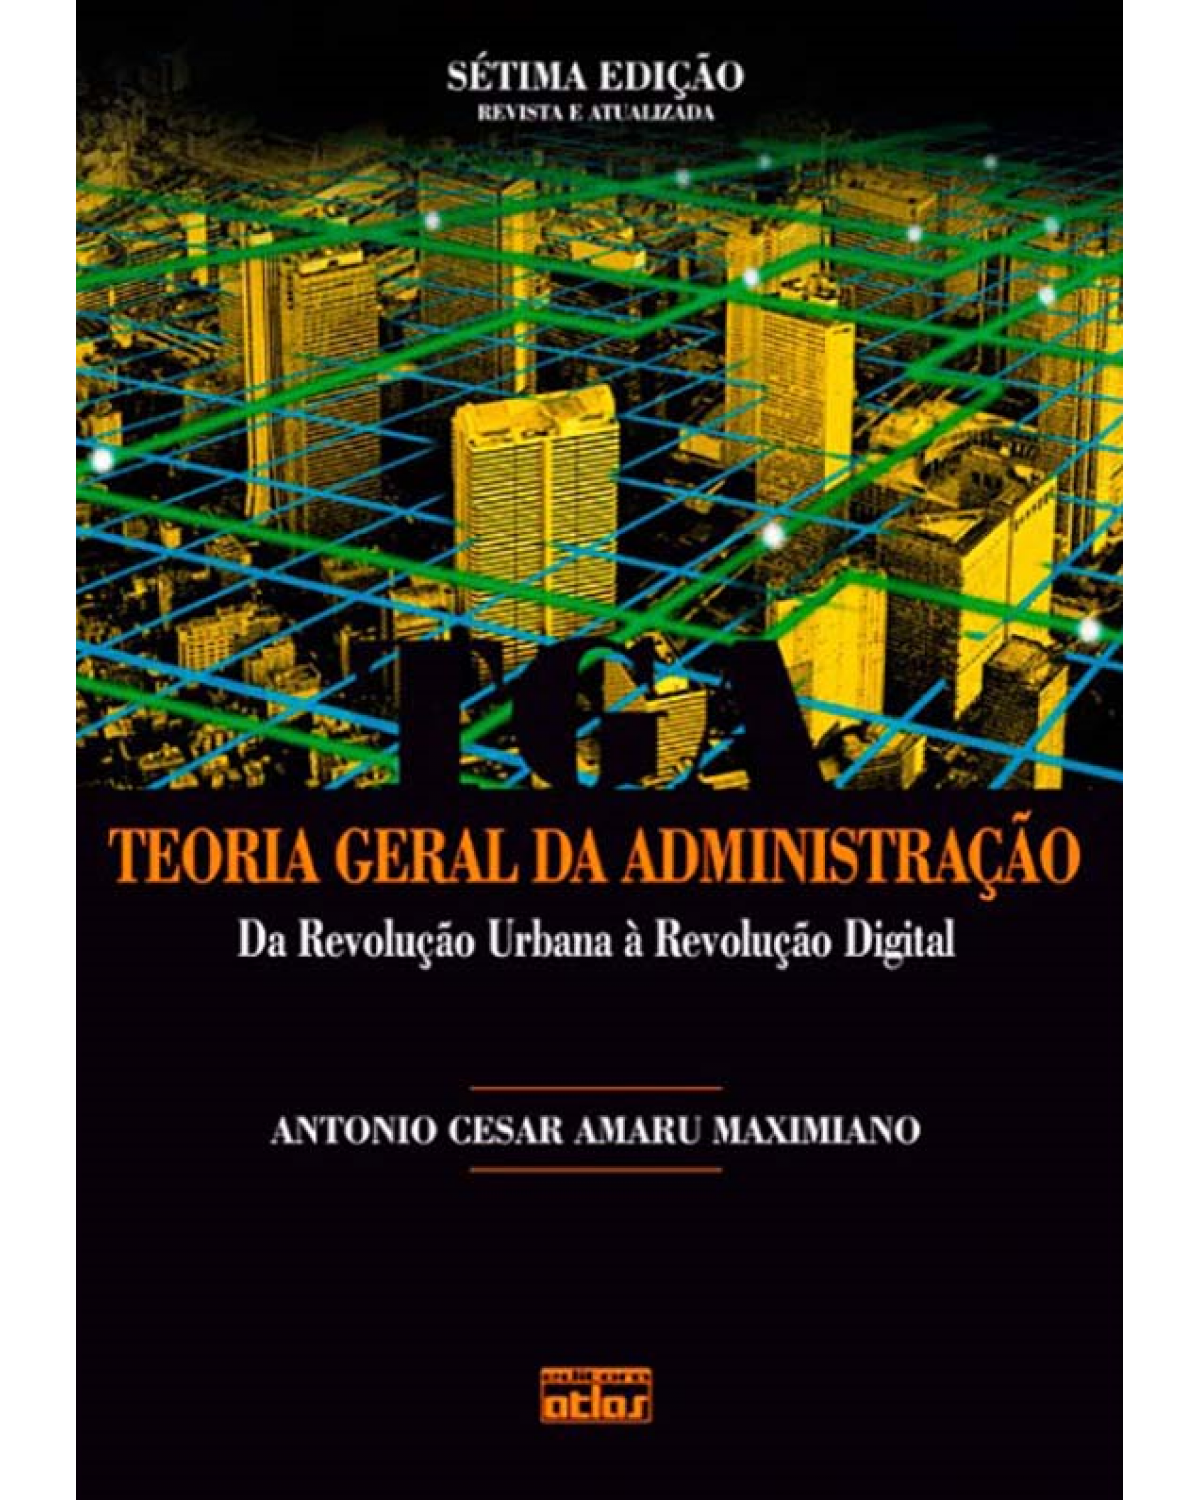 TEORIA GERAL DA ADMINISTRAÇÃO: Da Revolução Urbana à Revolução Digital - Da revolução urbana à revolução digital - 7ª Edição | 2012